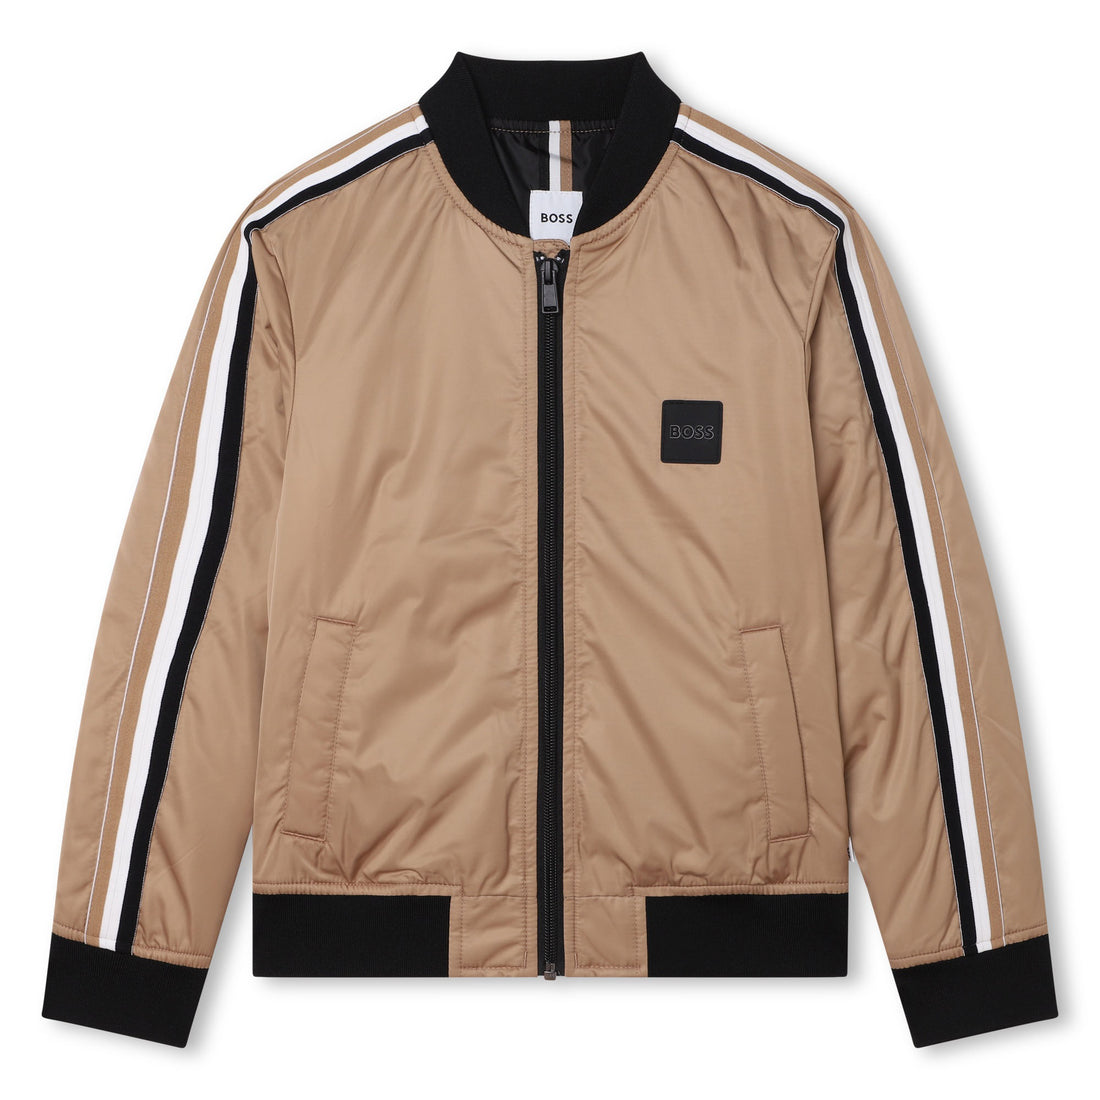 Hugo Boss Jacket Style: J26508